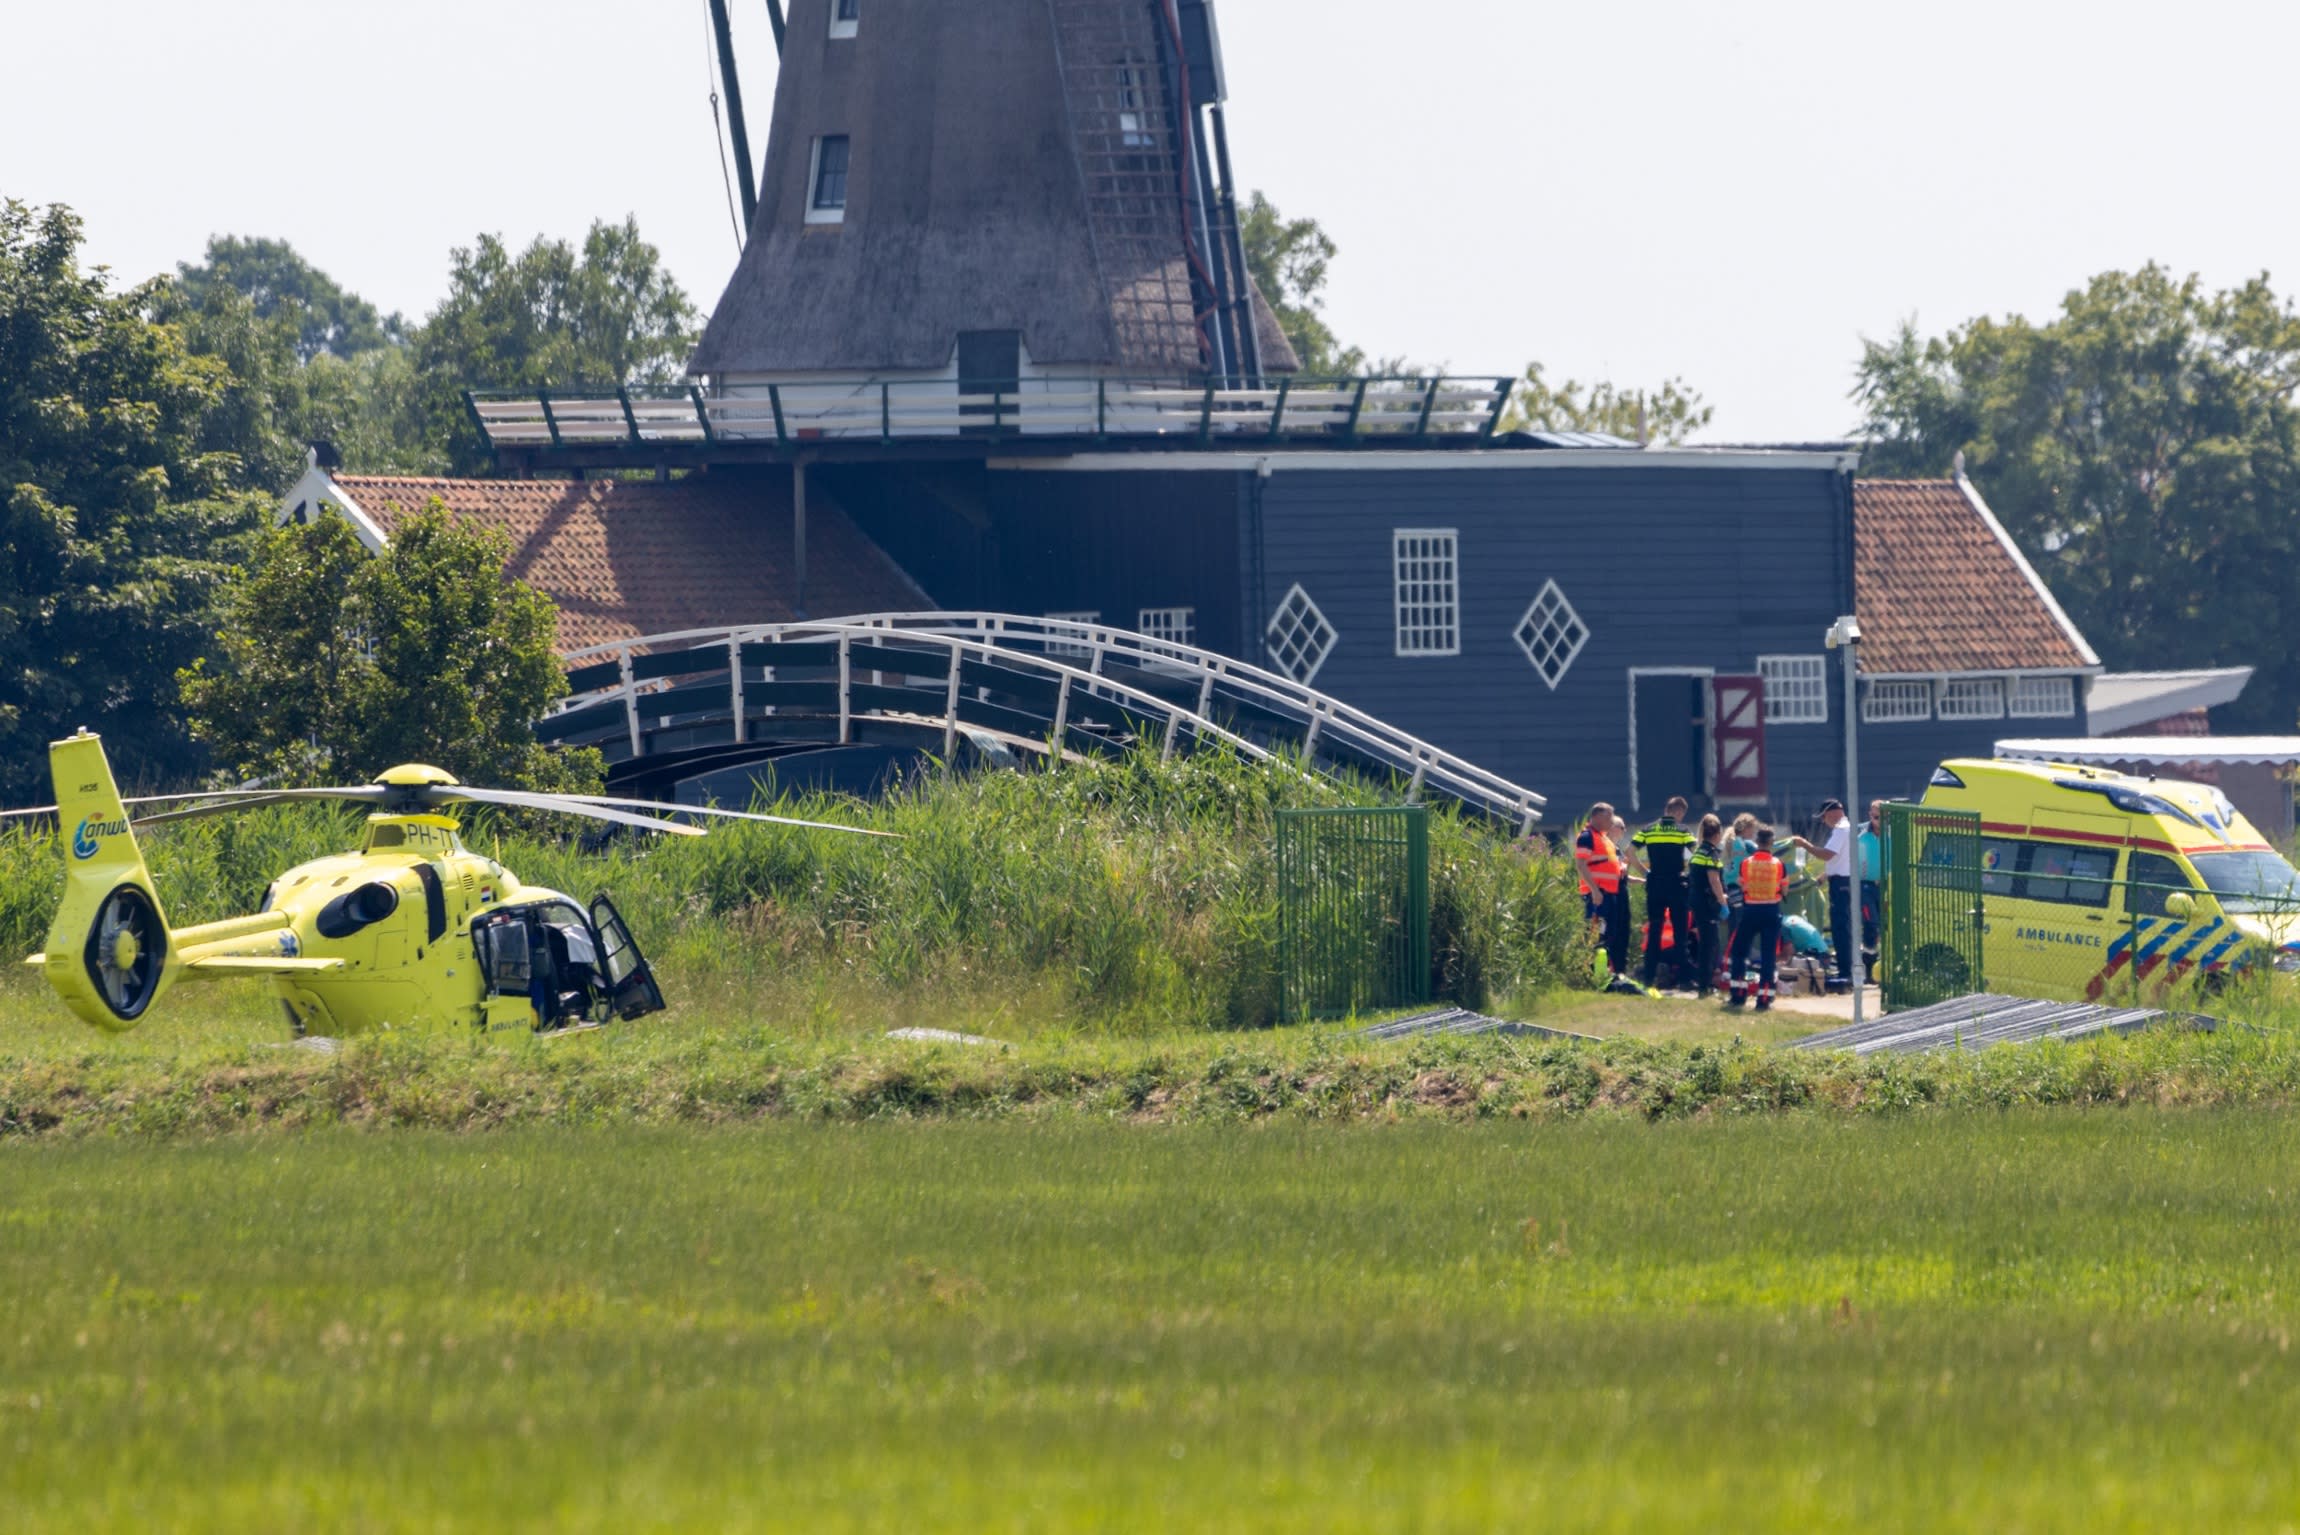 Dode na botsing tussen twee jetski's op het water bij Friese IJlst